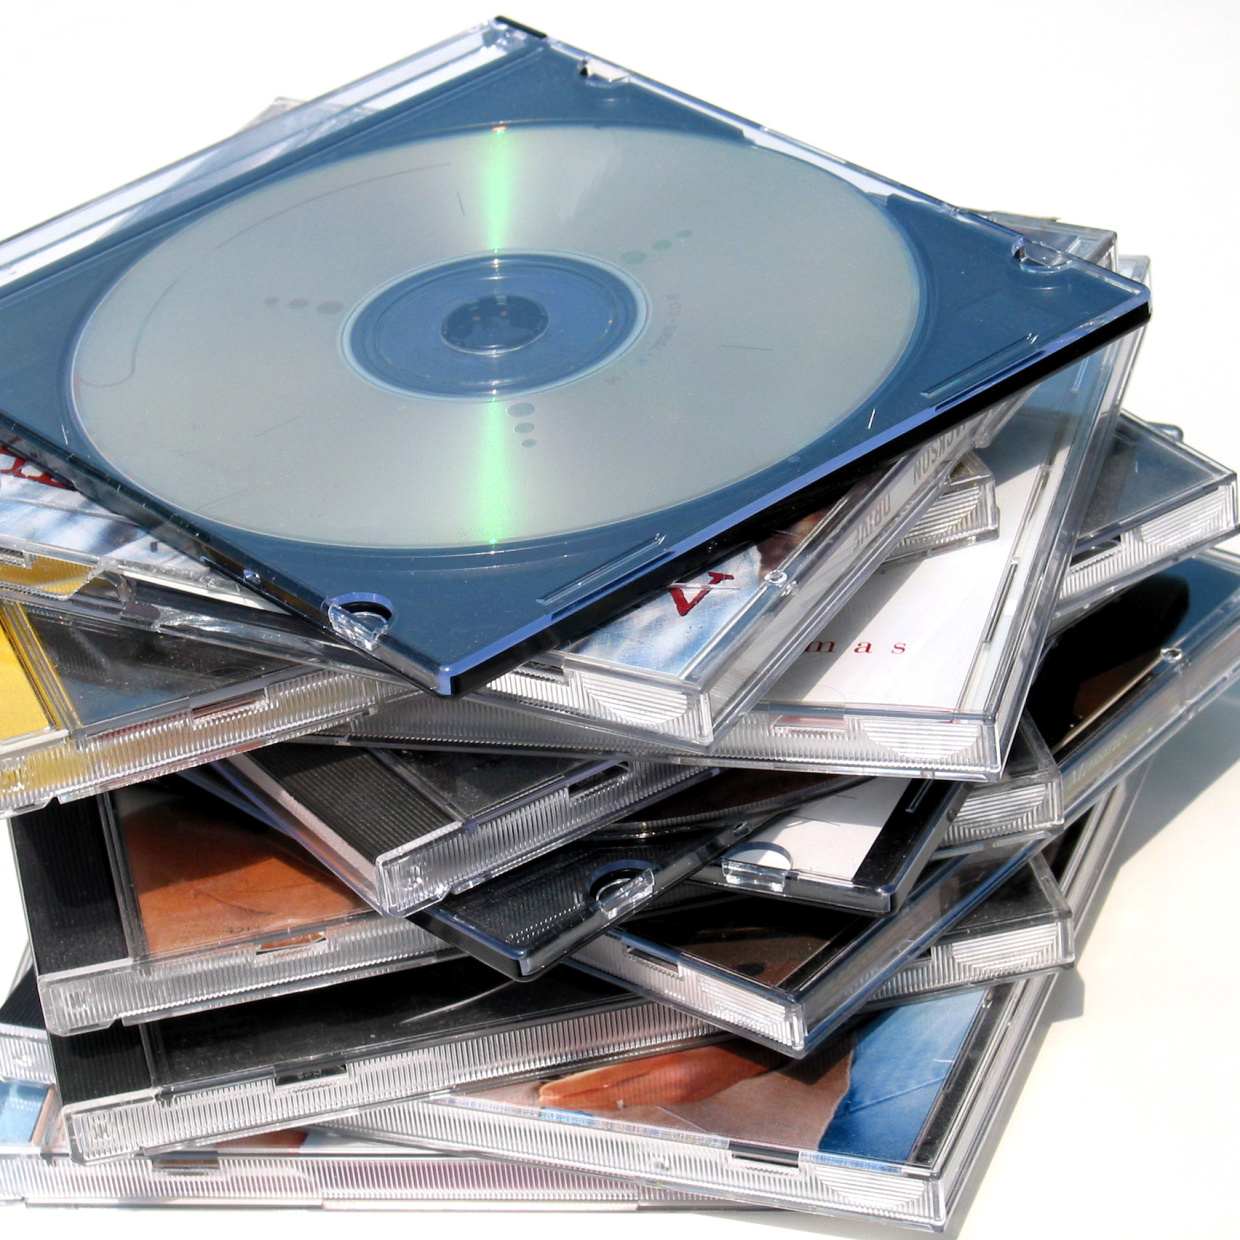  CDケースの目立つデザインを隠して”スッキリオシャレに”見せるワザ 